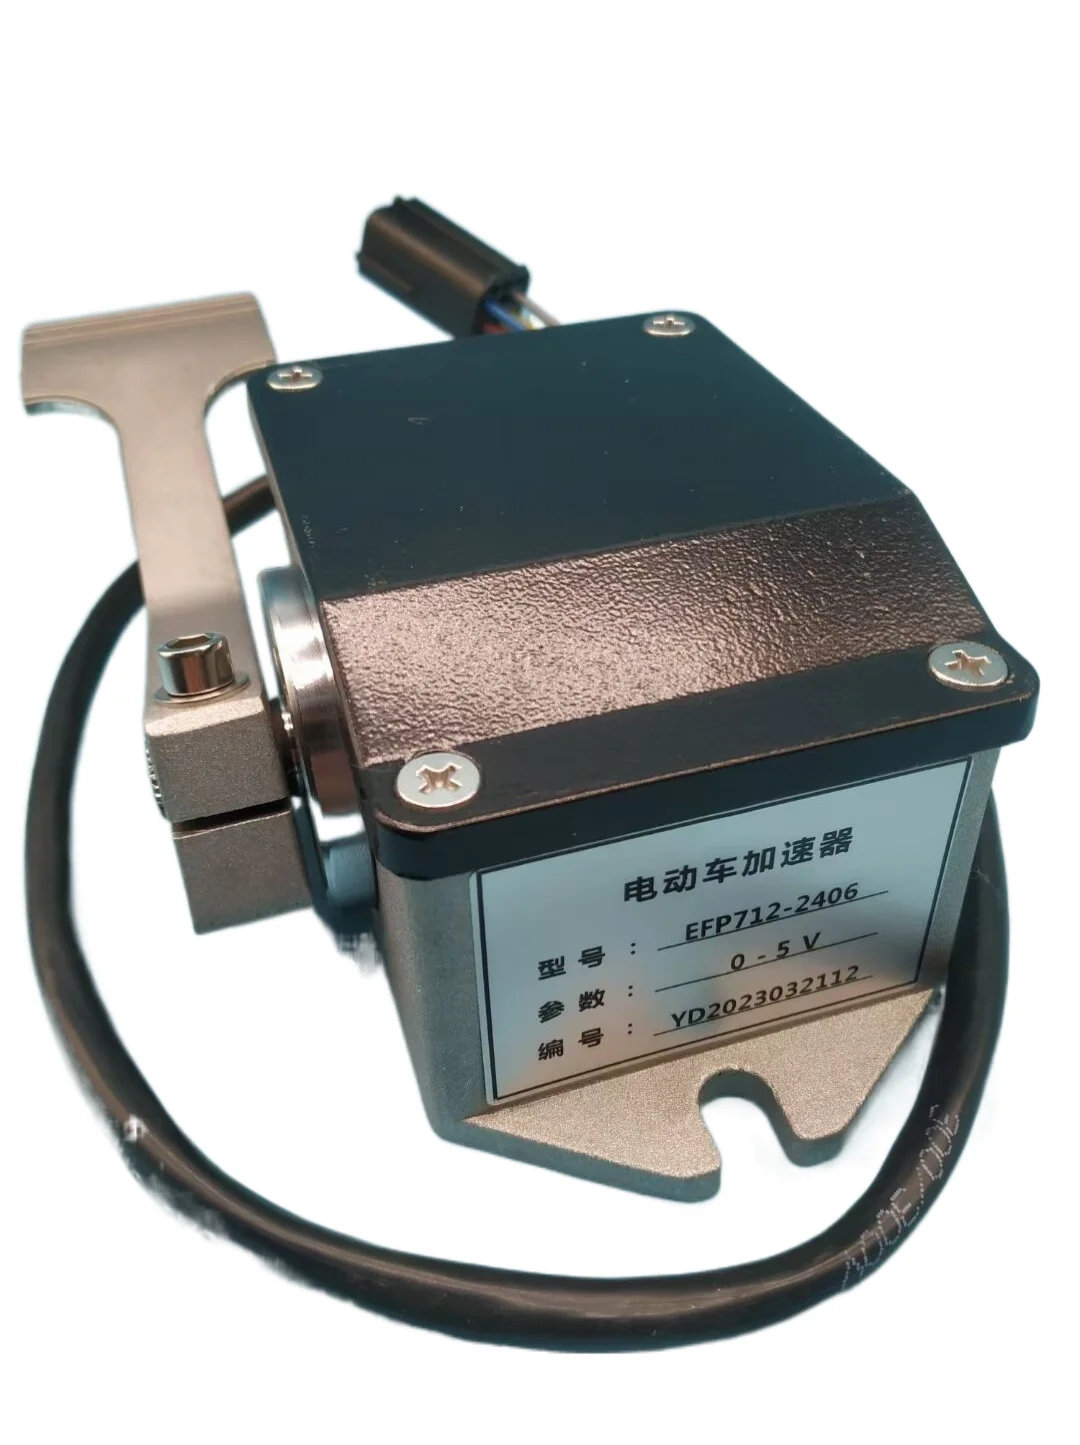 Педаль акселератора электрического экскурсионного вилочного погрузчика EFP712-2406 резистивная 0-5 В